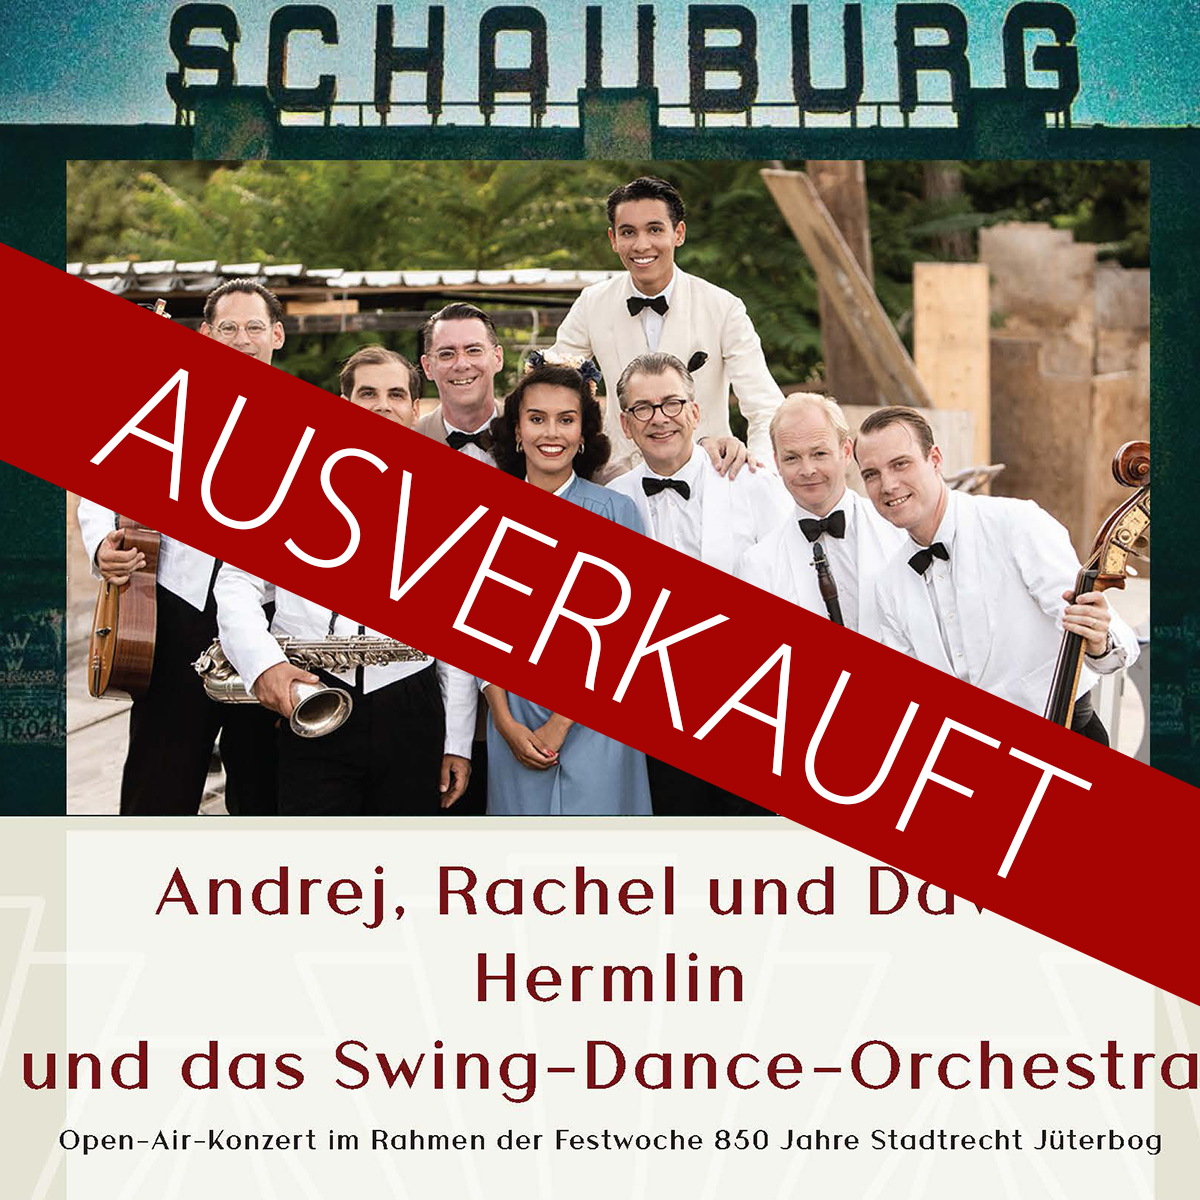 ALTE SCHAUBURG - SWING-DANCE-ORCHESTER